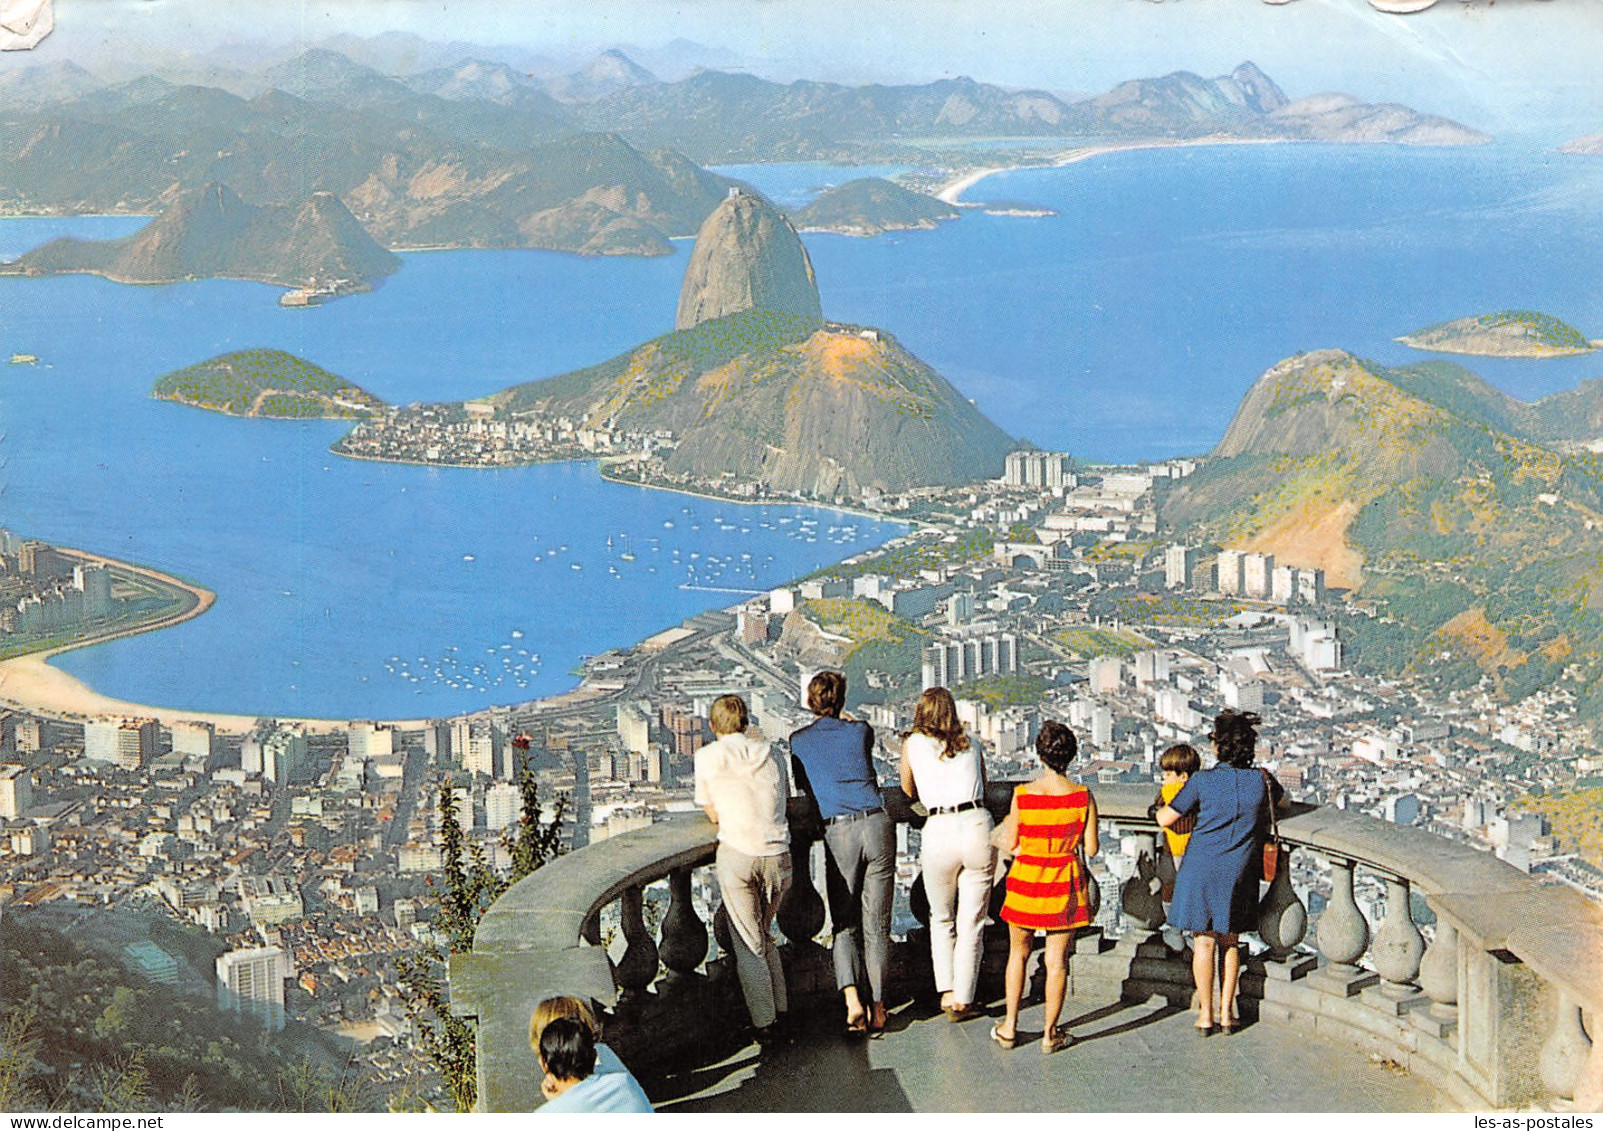 BRESIL RIO DE JANEIRO - Rio De Janeiro